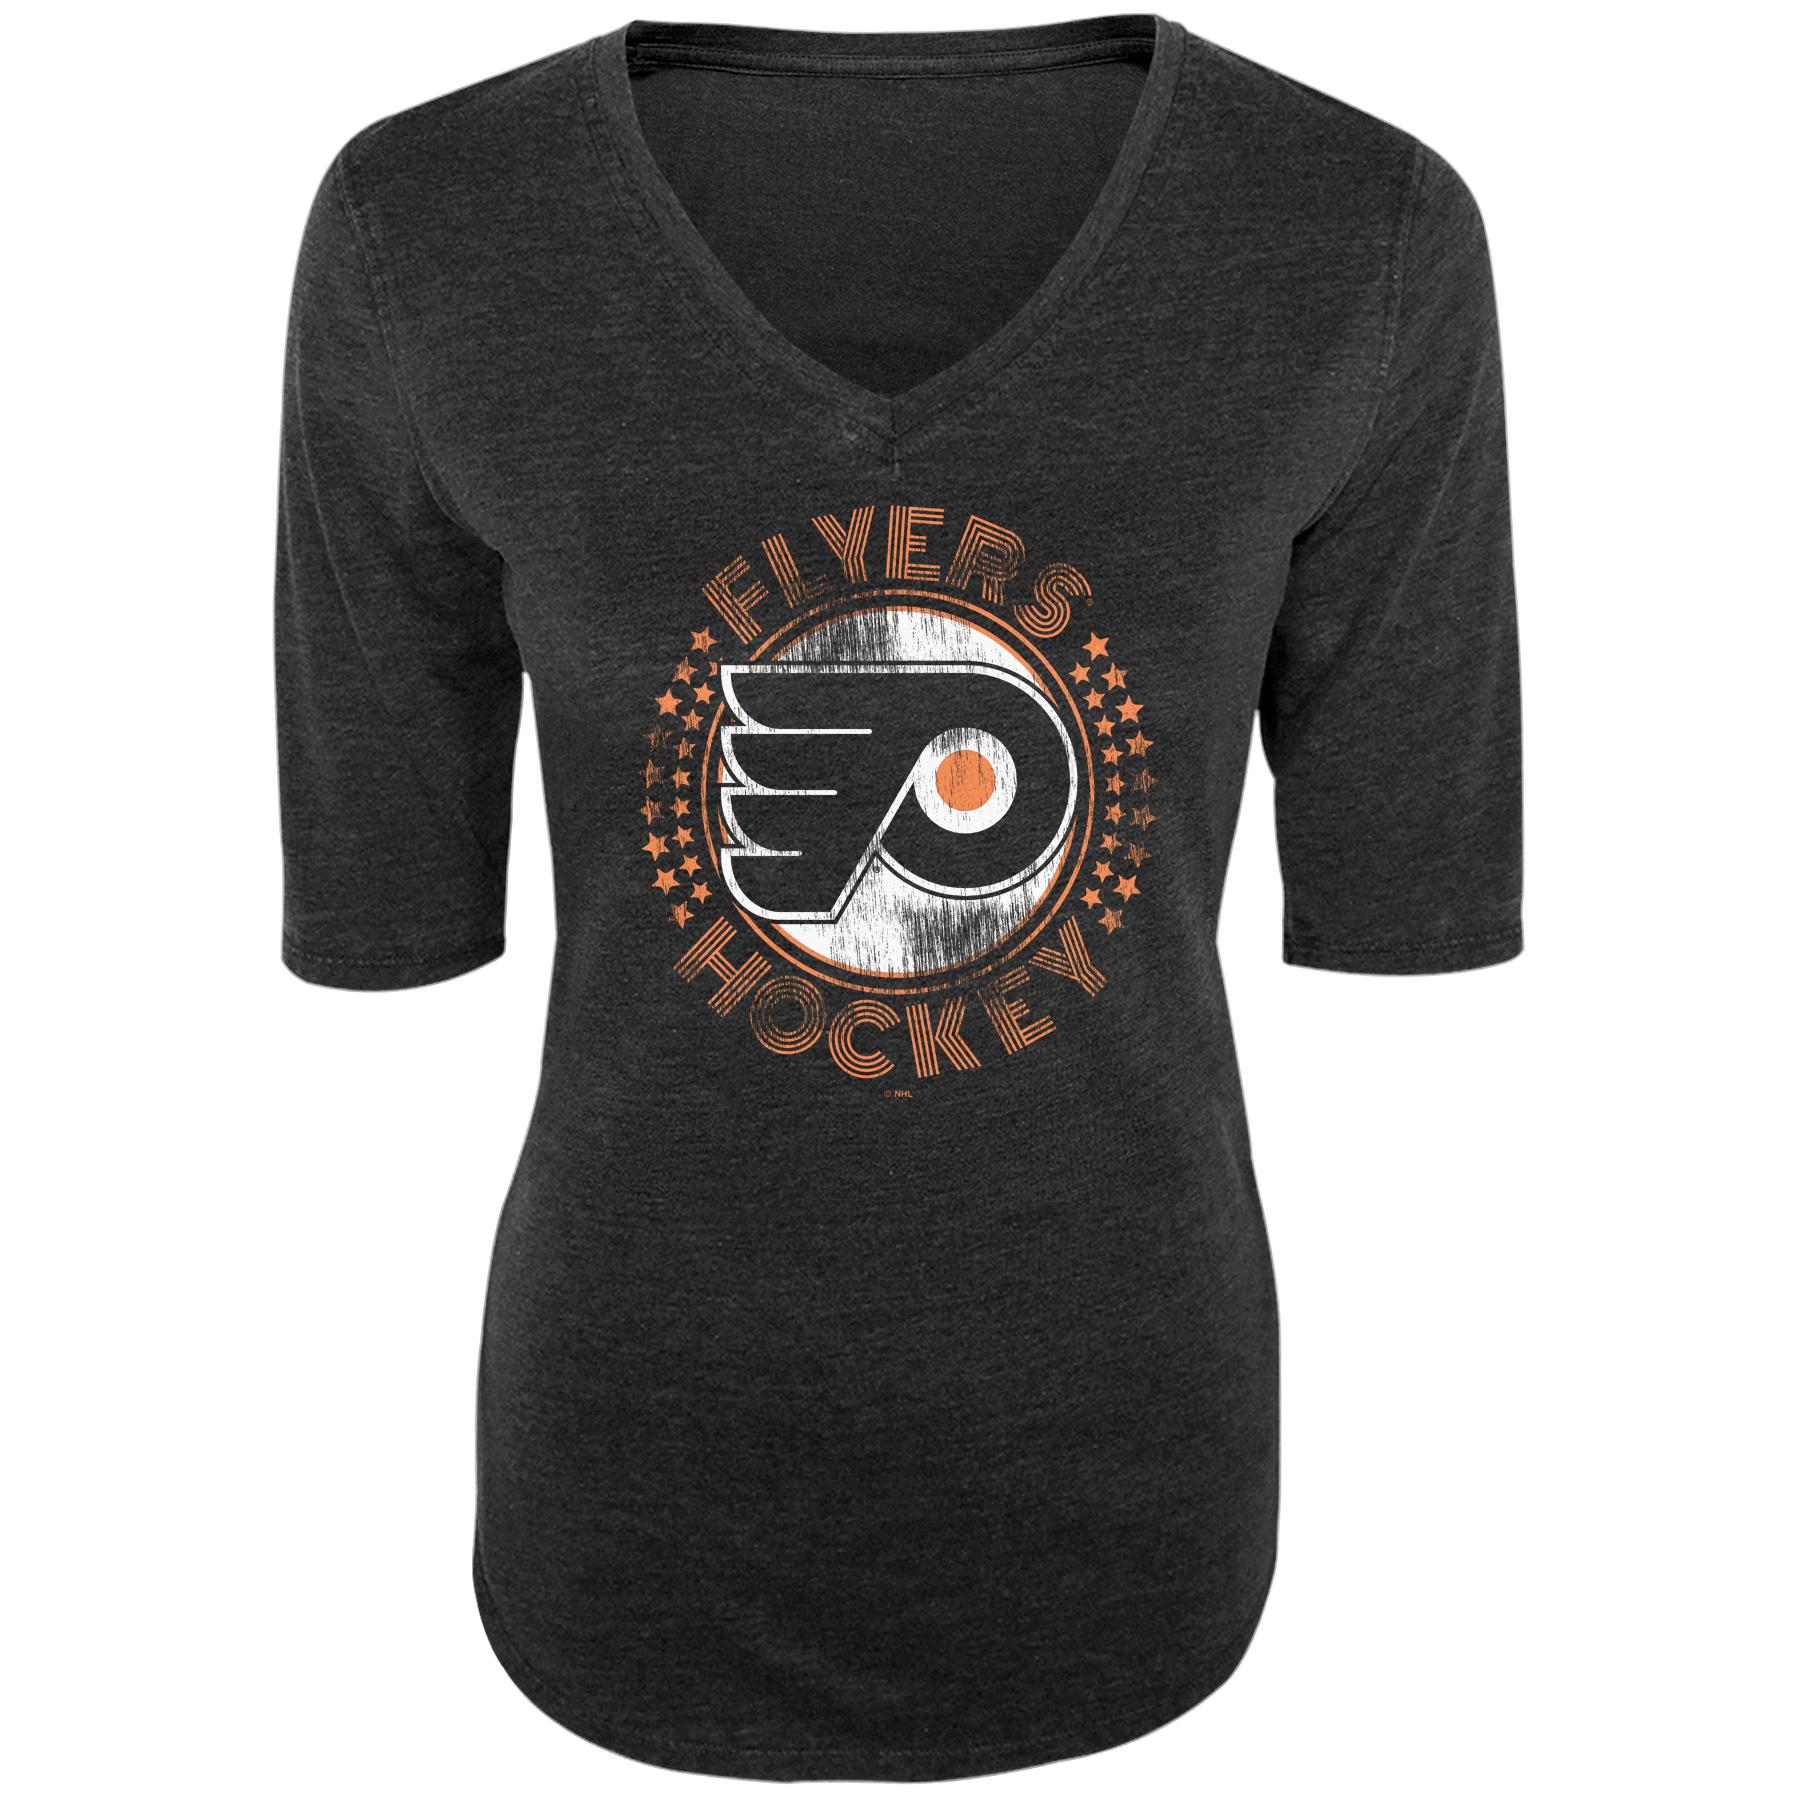 NHL Women's V-Neck T-Shirt - Philadelphia Flyers